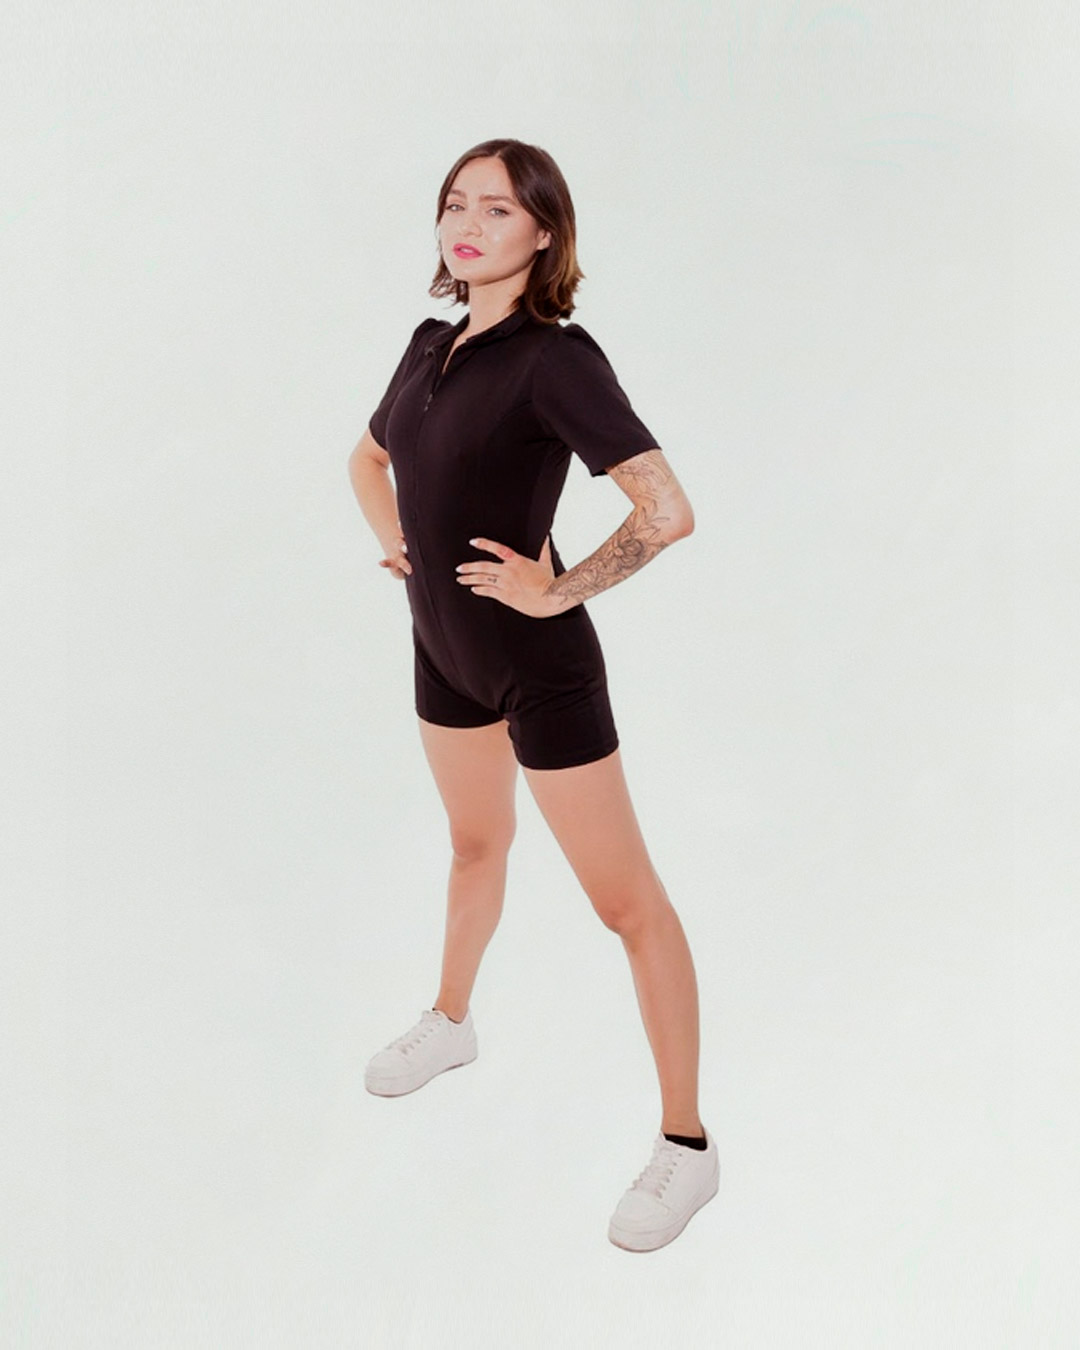  Bailarina profesional, docente e Instructora de Pilates Matwork